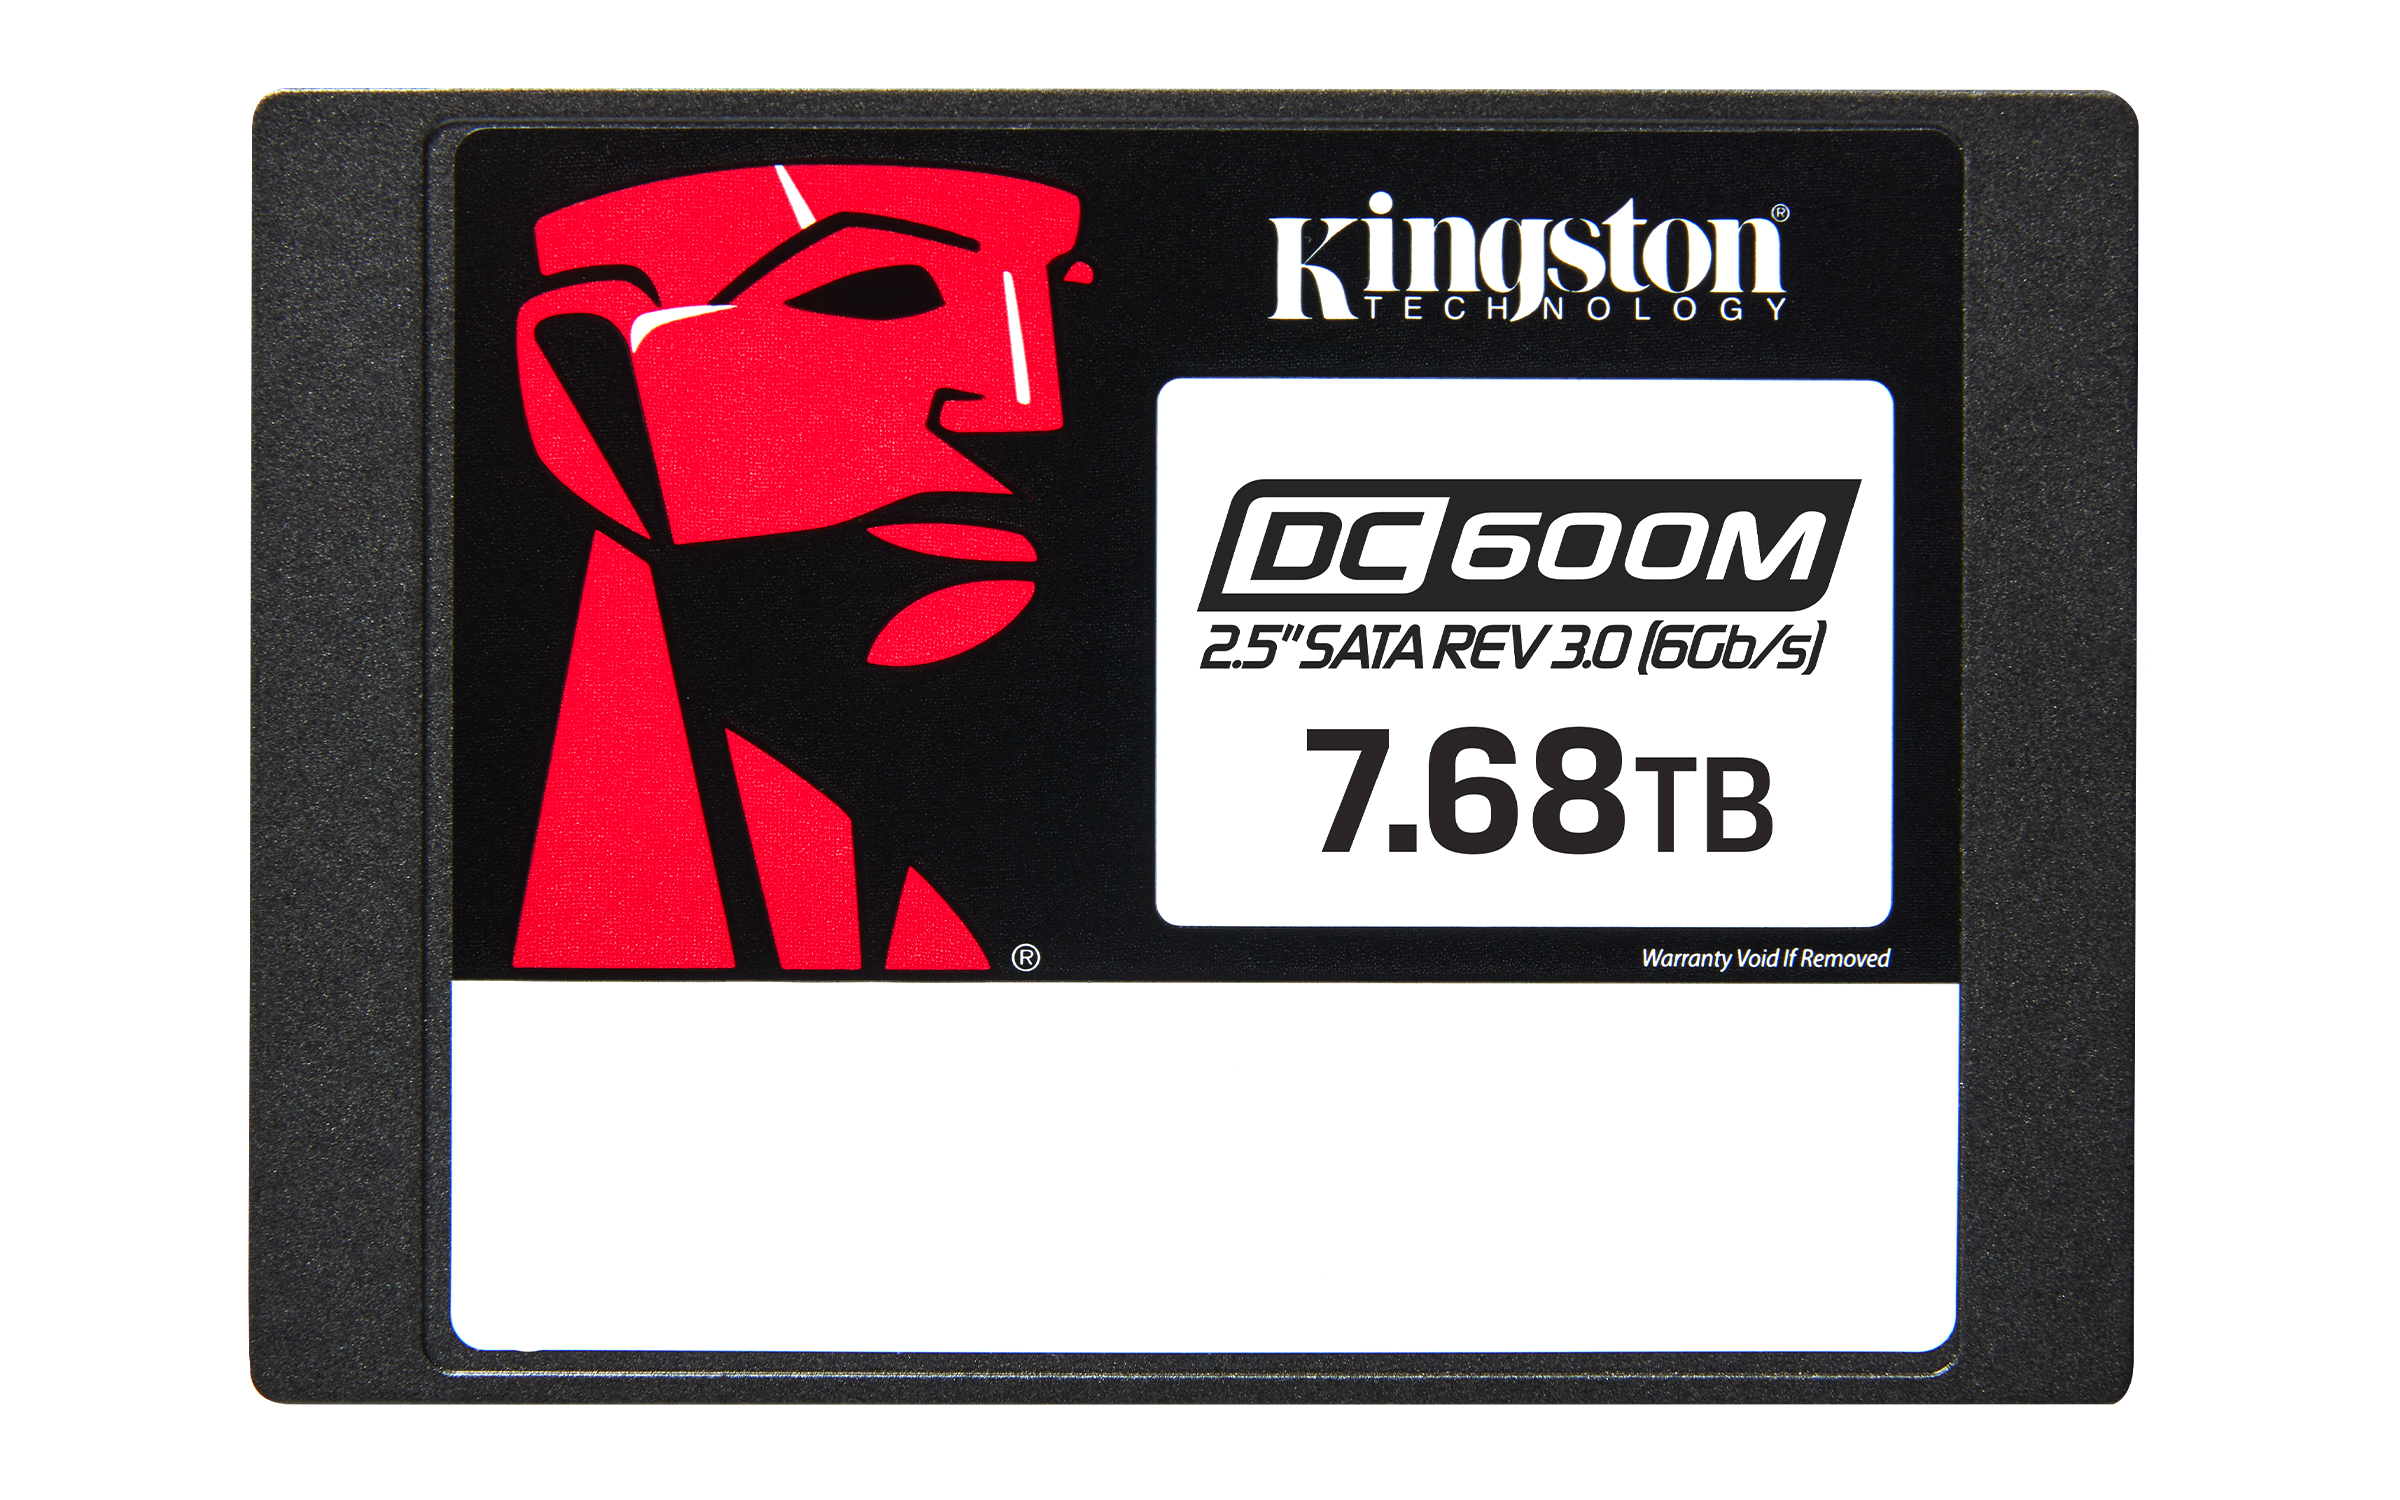 Kingston DC600M Enterprise SSD